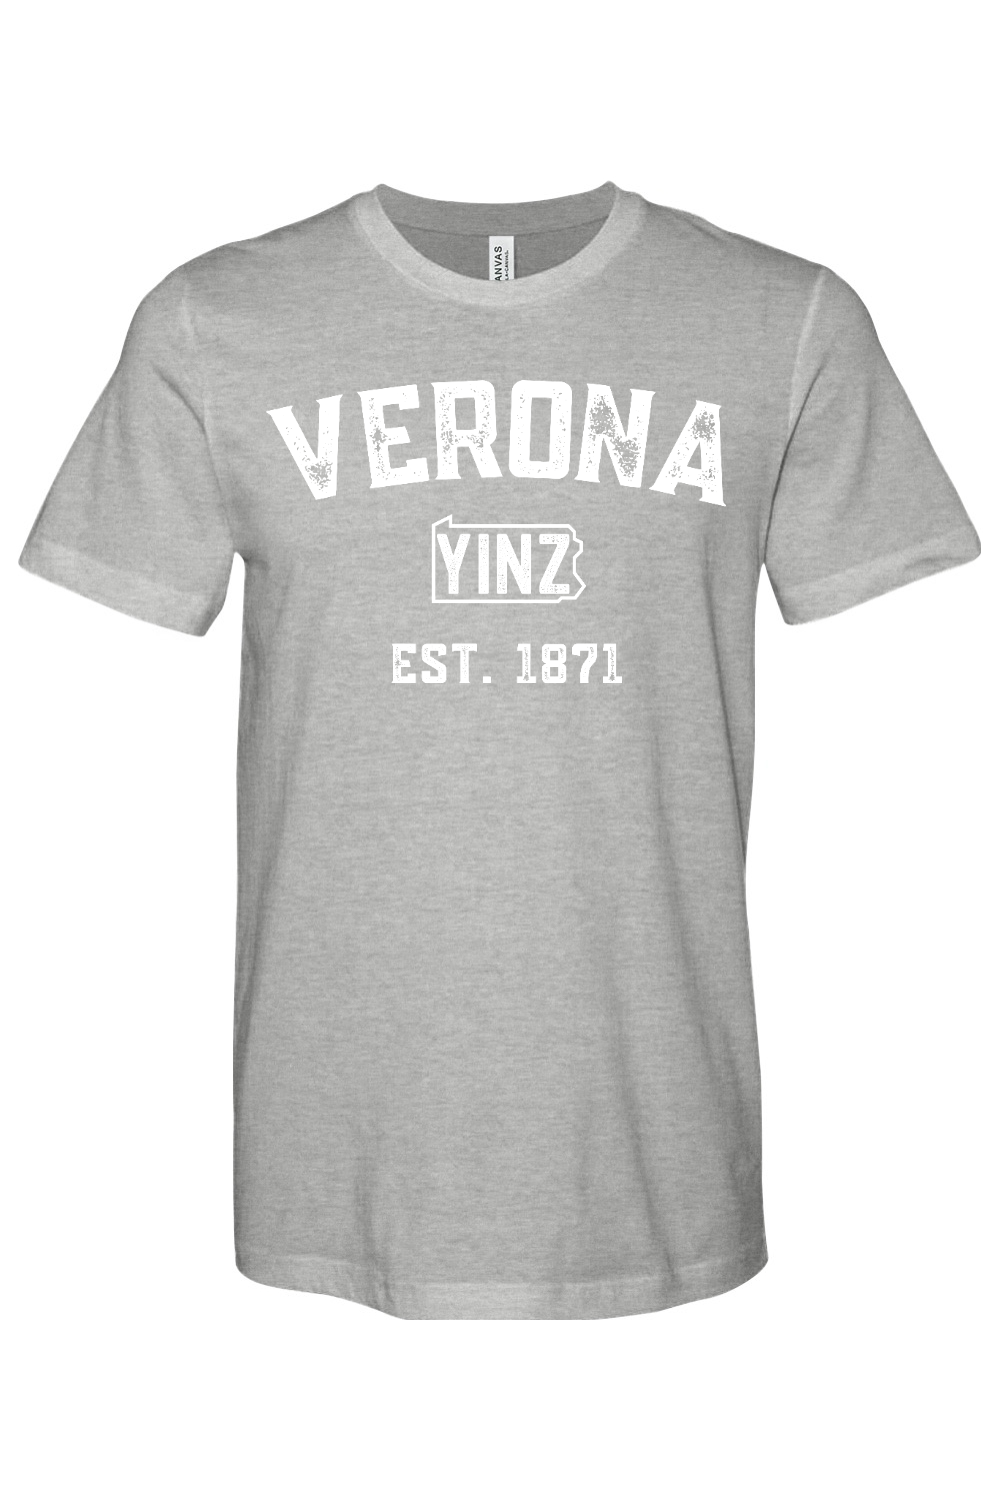 Verona Yinzylvania - Yinzylvania